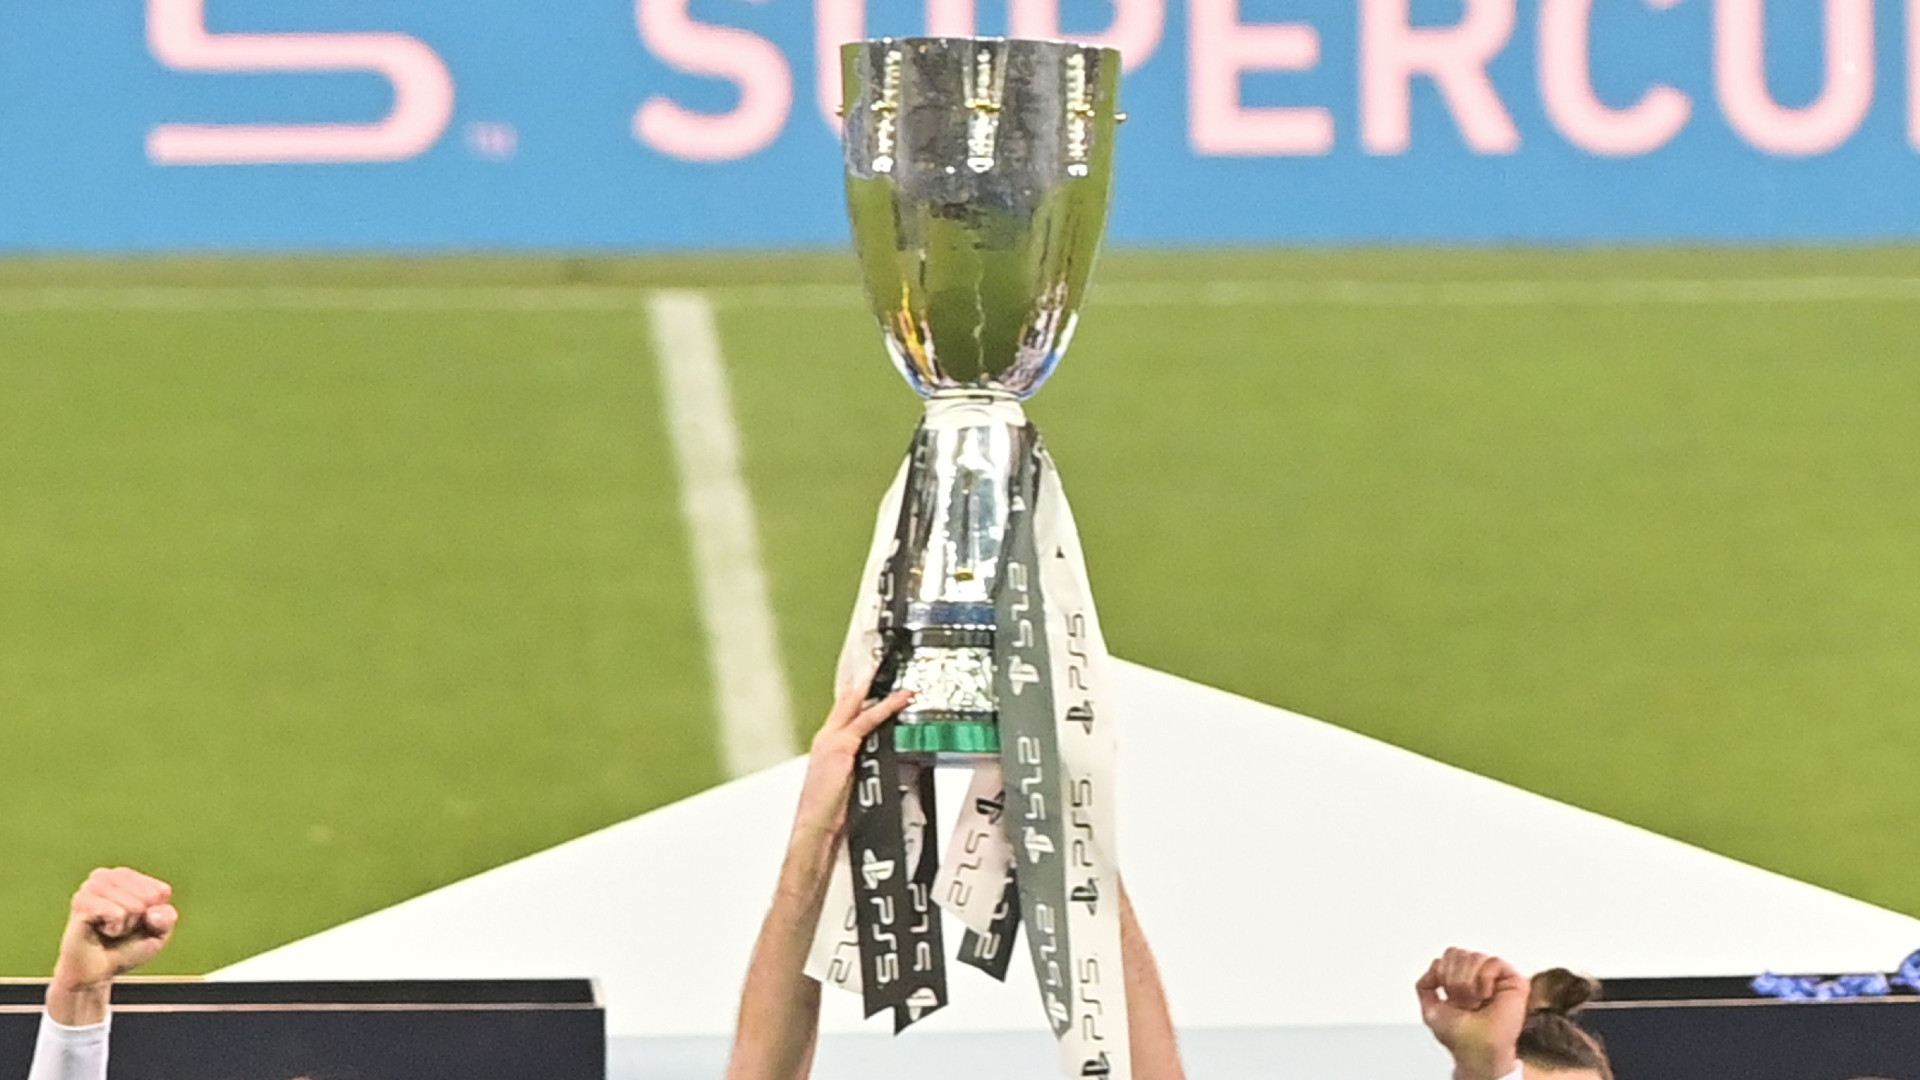 Partnership tra Serie A e Socios.com: la piattaforma premierà l’MVP della Supercoppa Italiana